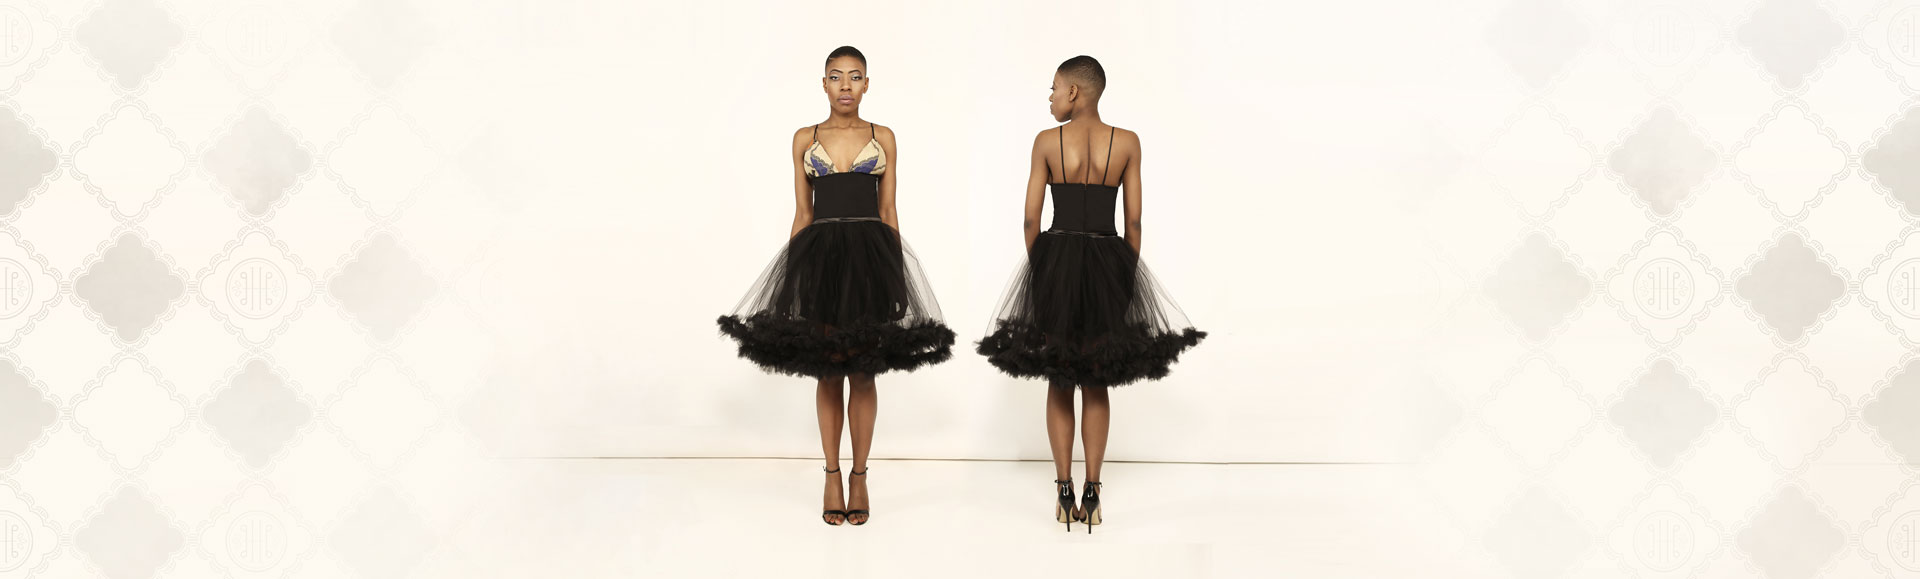 black-ballerina-dress-1-web.jpg